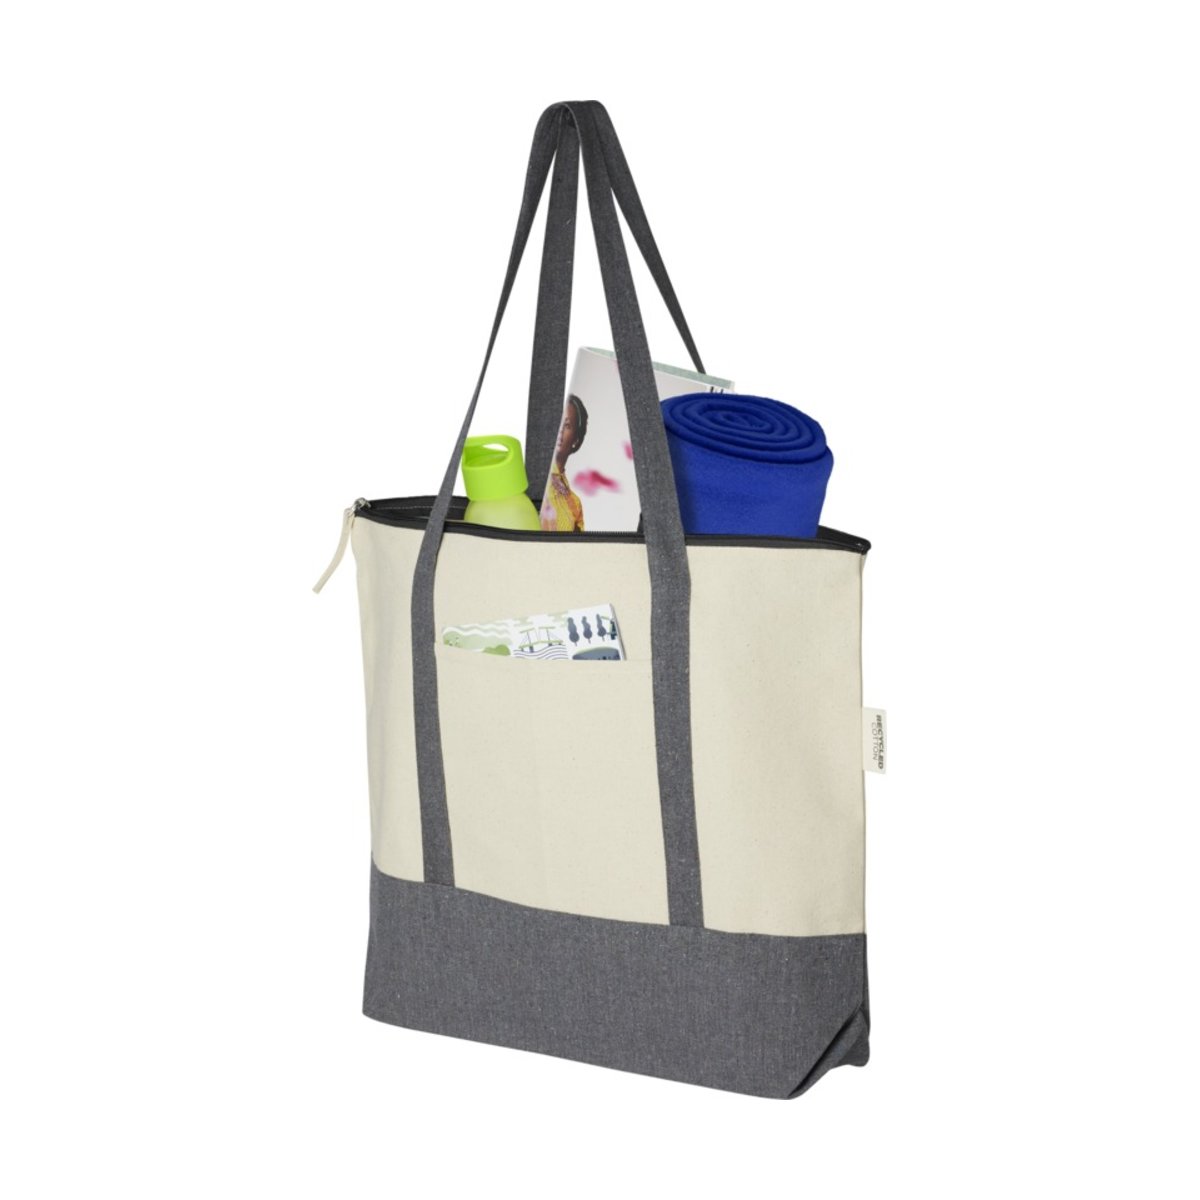 Repose torba na zakupy z suwakiem o pojemności 10 l z bawełny z recyklingu o gramaturze 320 g/m²